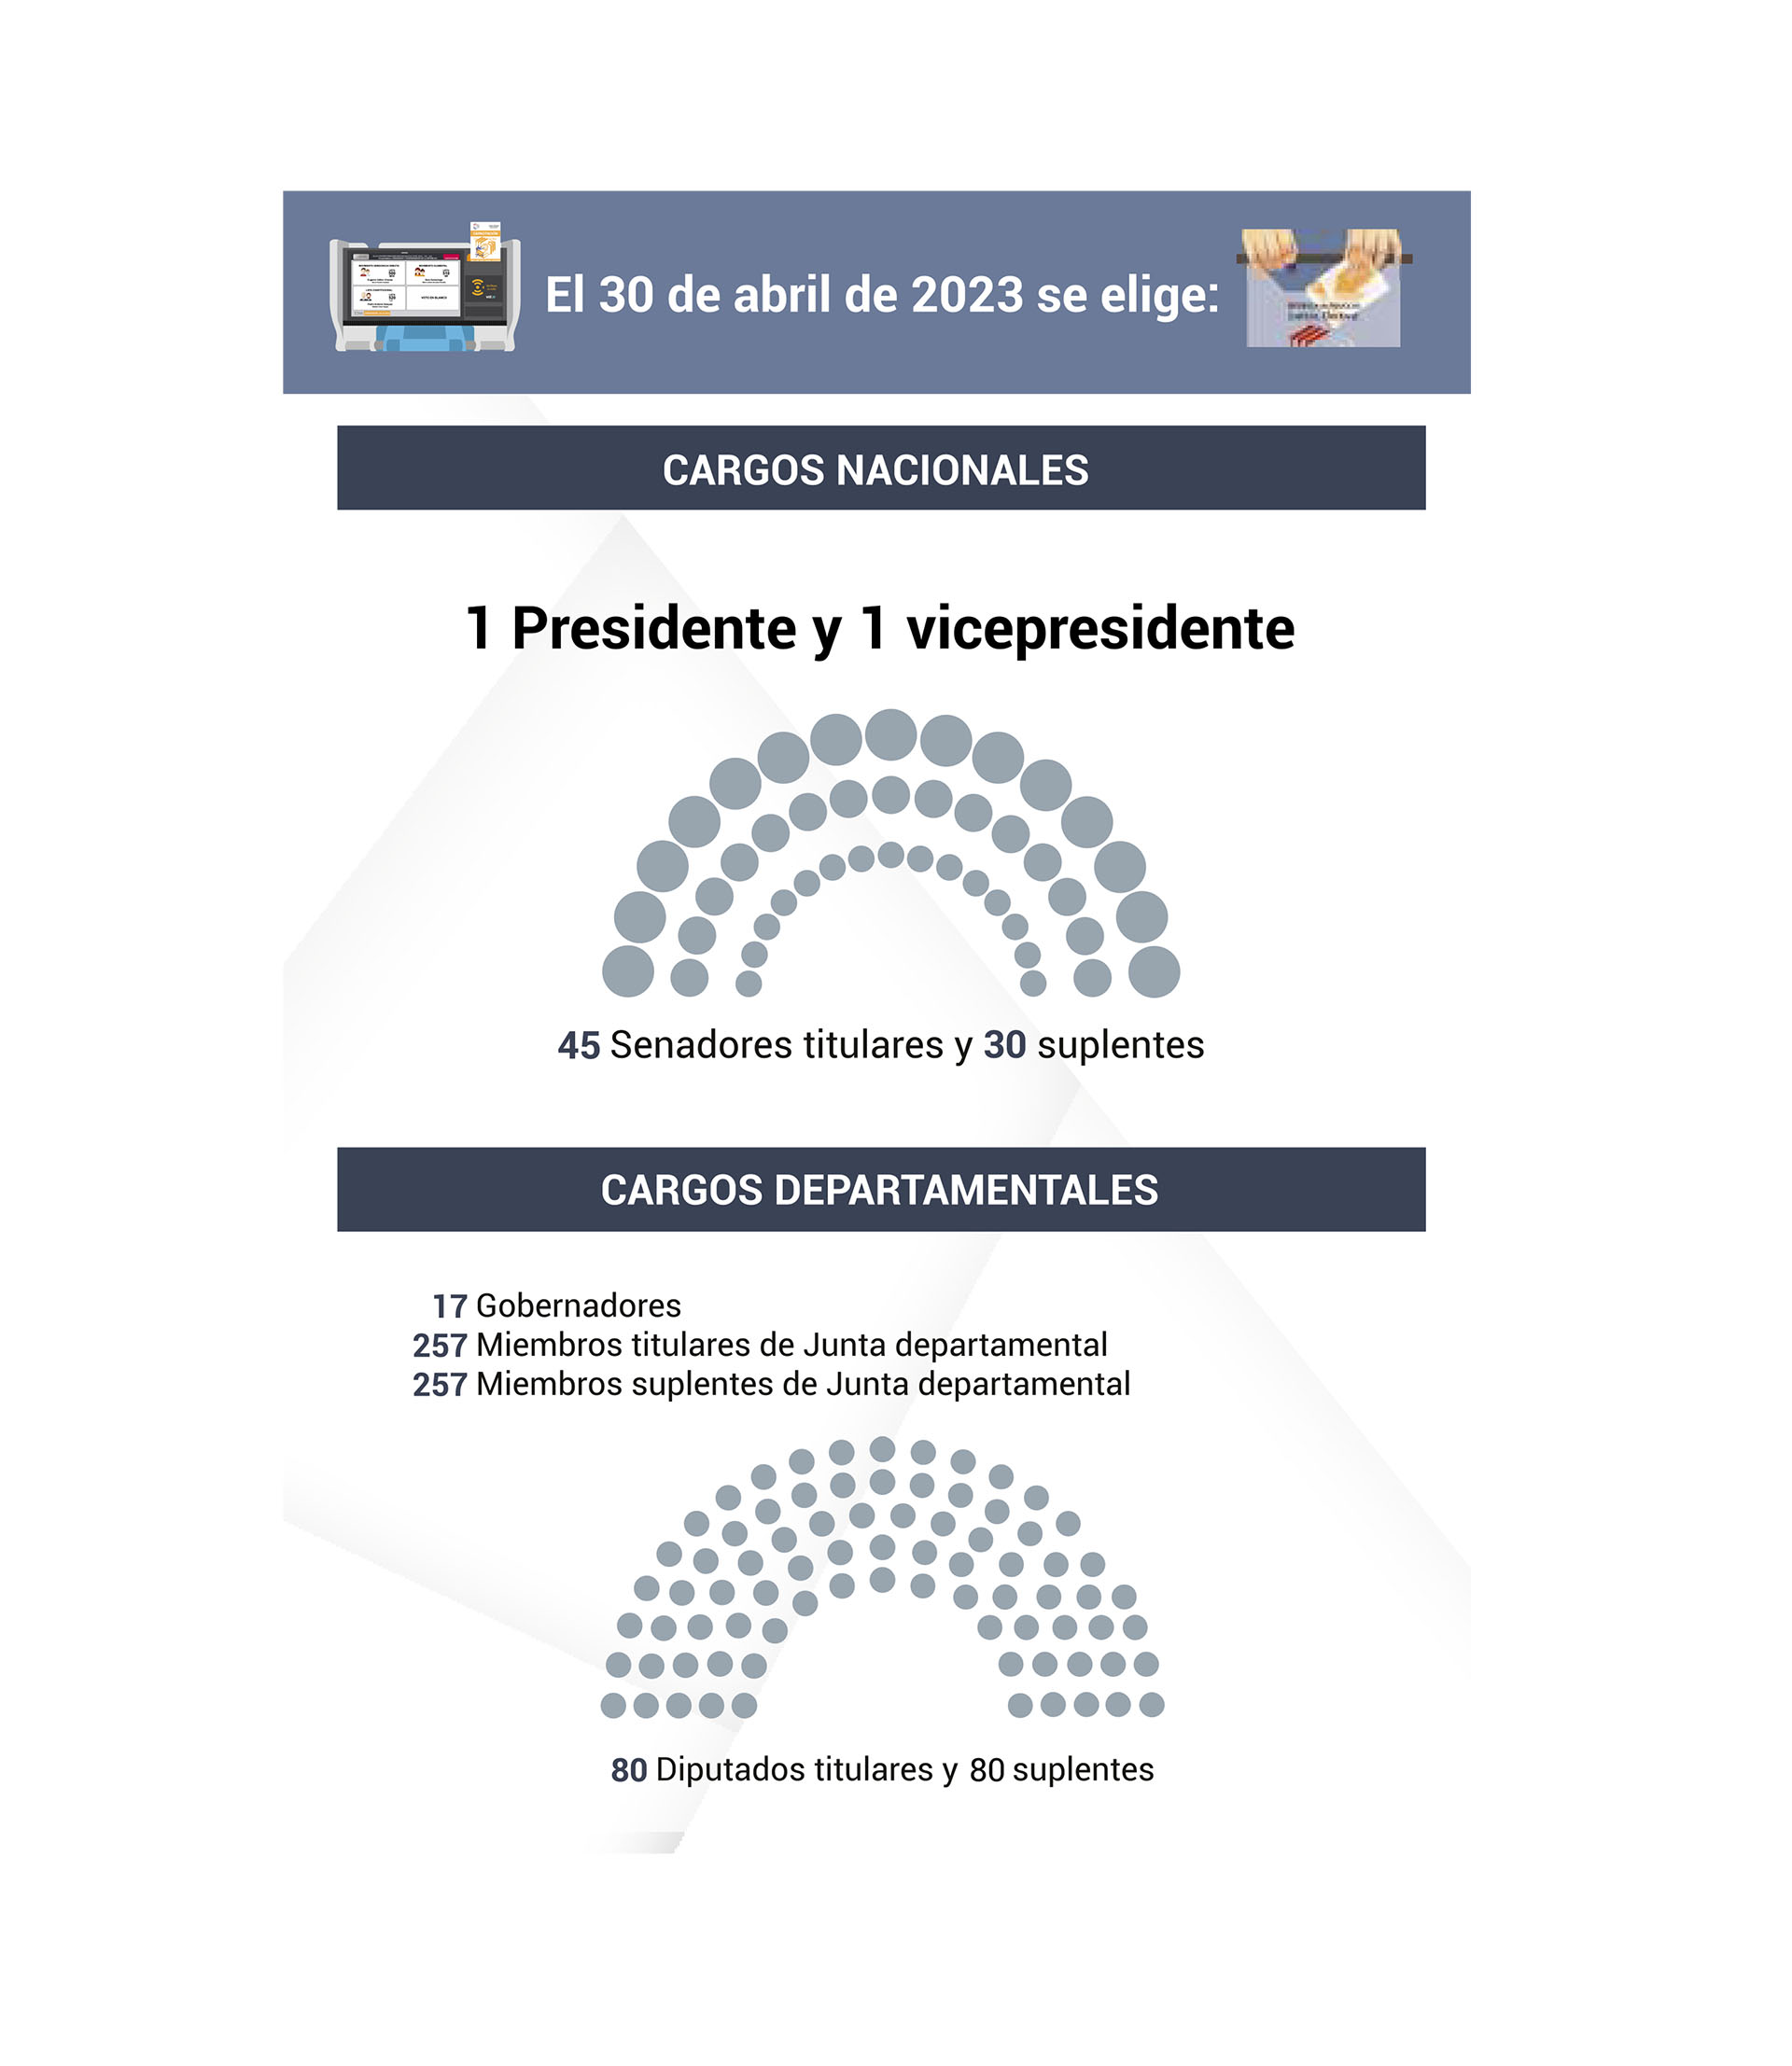 Cargos nacionales y departamentales (Crédito: Justicia Electoral de Paraguay)